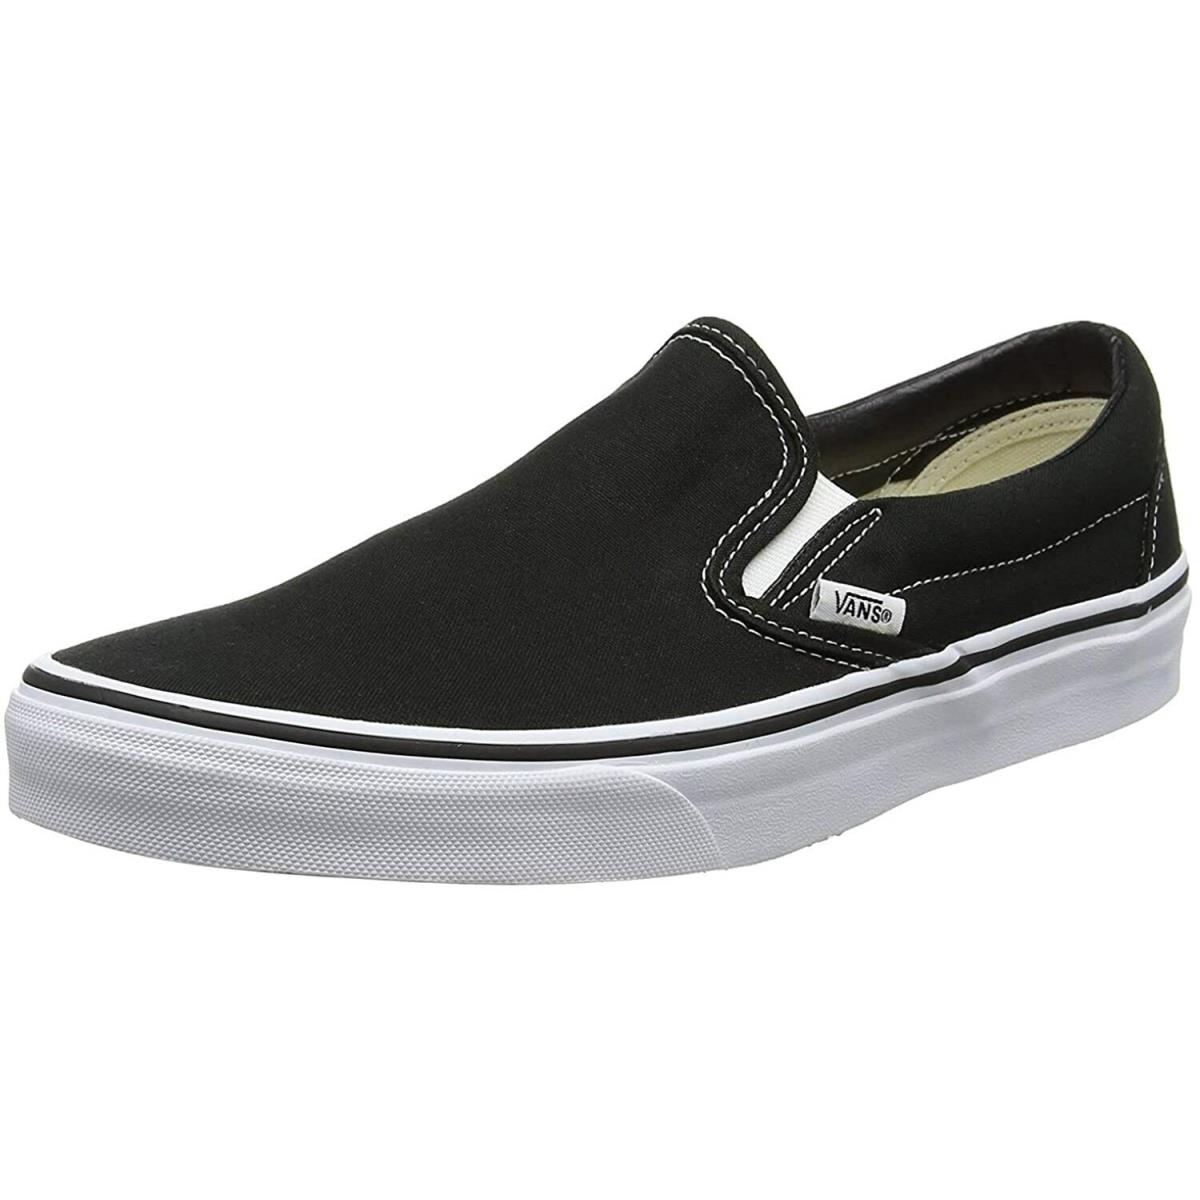 Vans Classic Slip-on Skate Shoes Black/white Size US Men`s 10 / Women`s 11.5